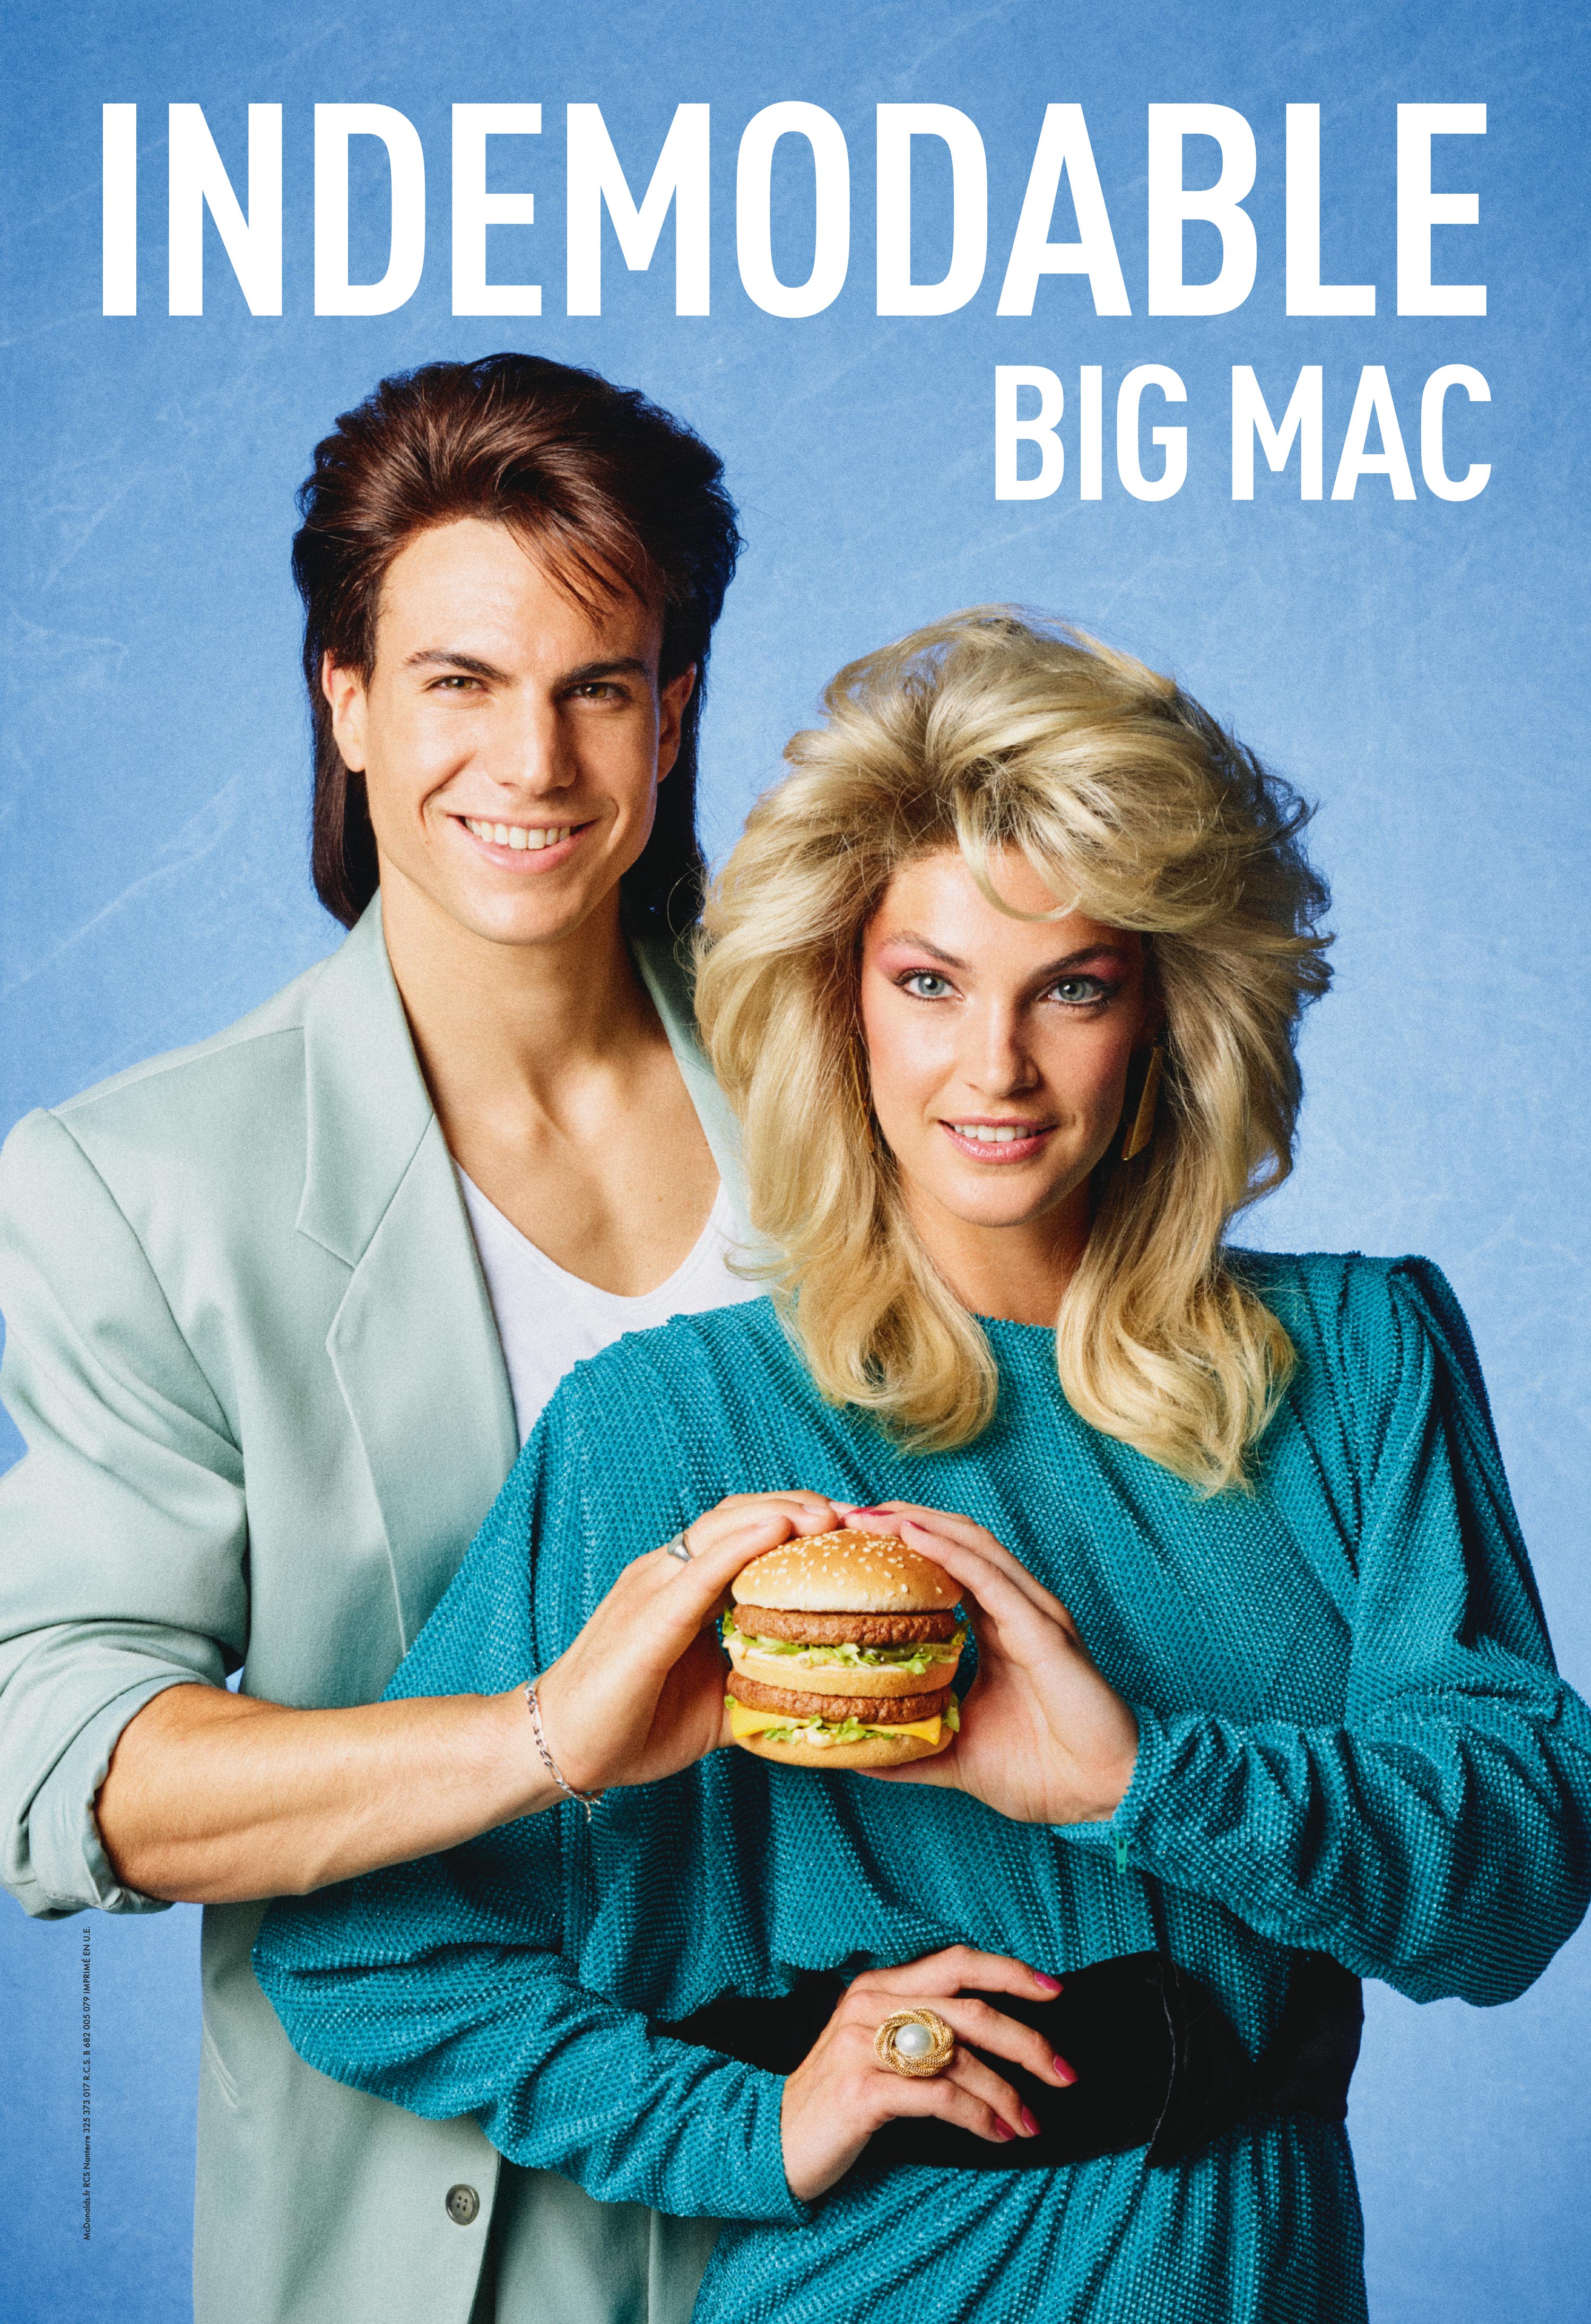 mcdonalds-big-mac-publicite-marketing-indemodable-70s-80s-print-affichage-tbwa-paris